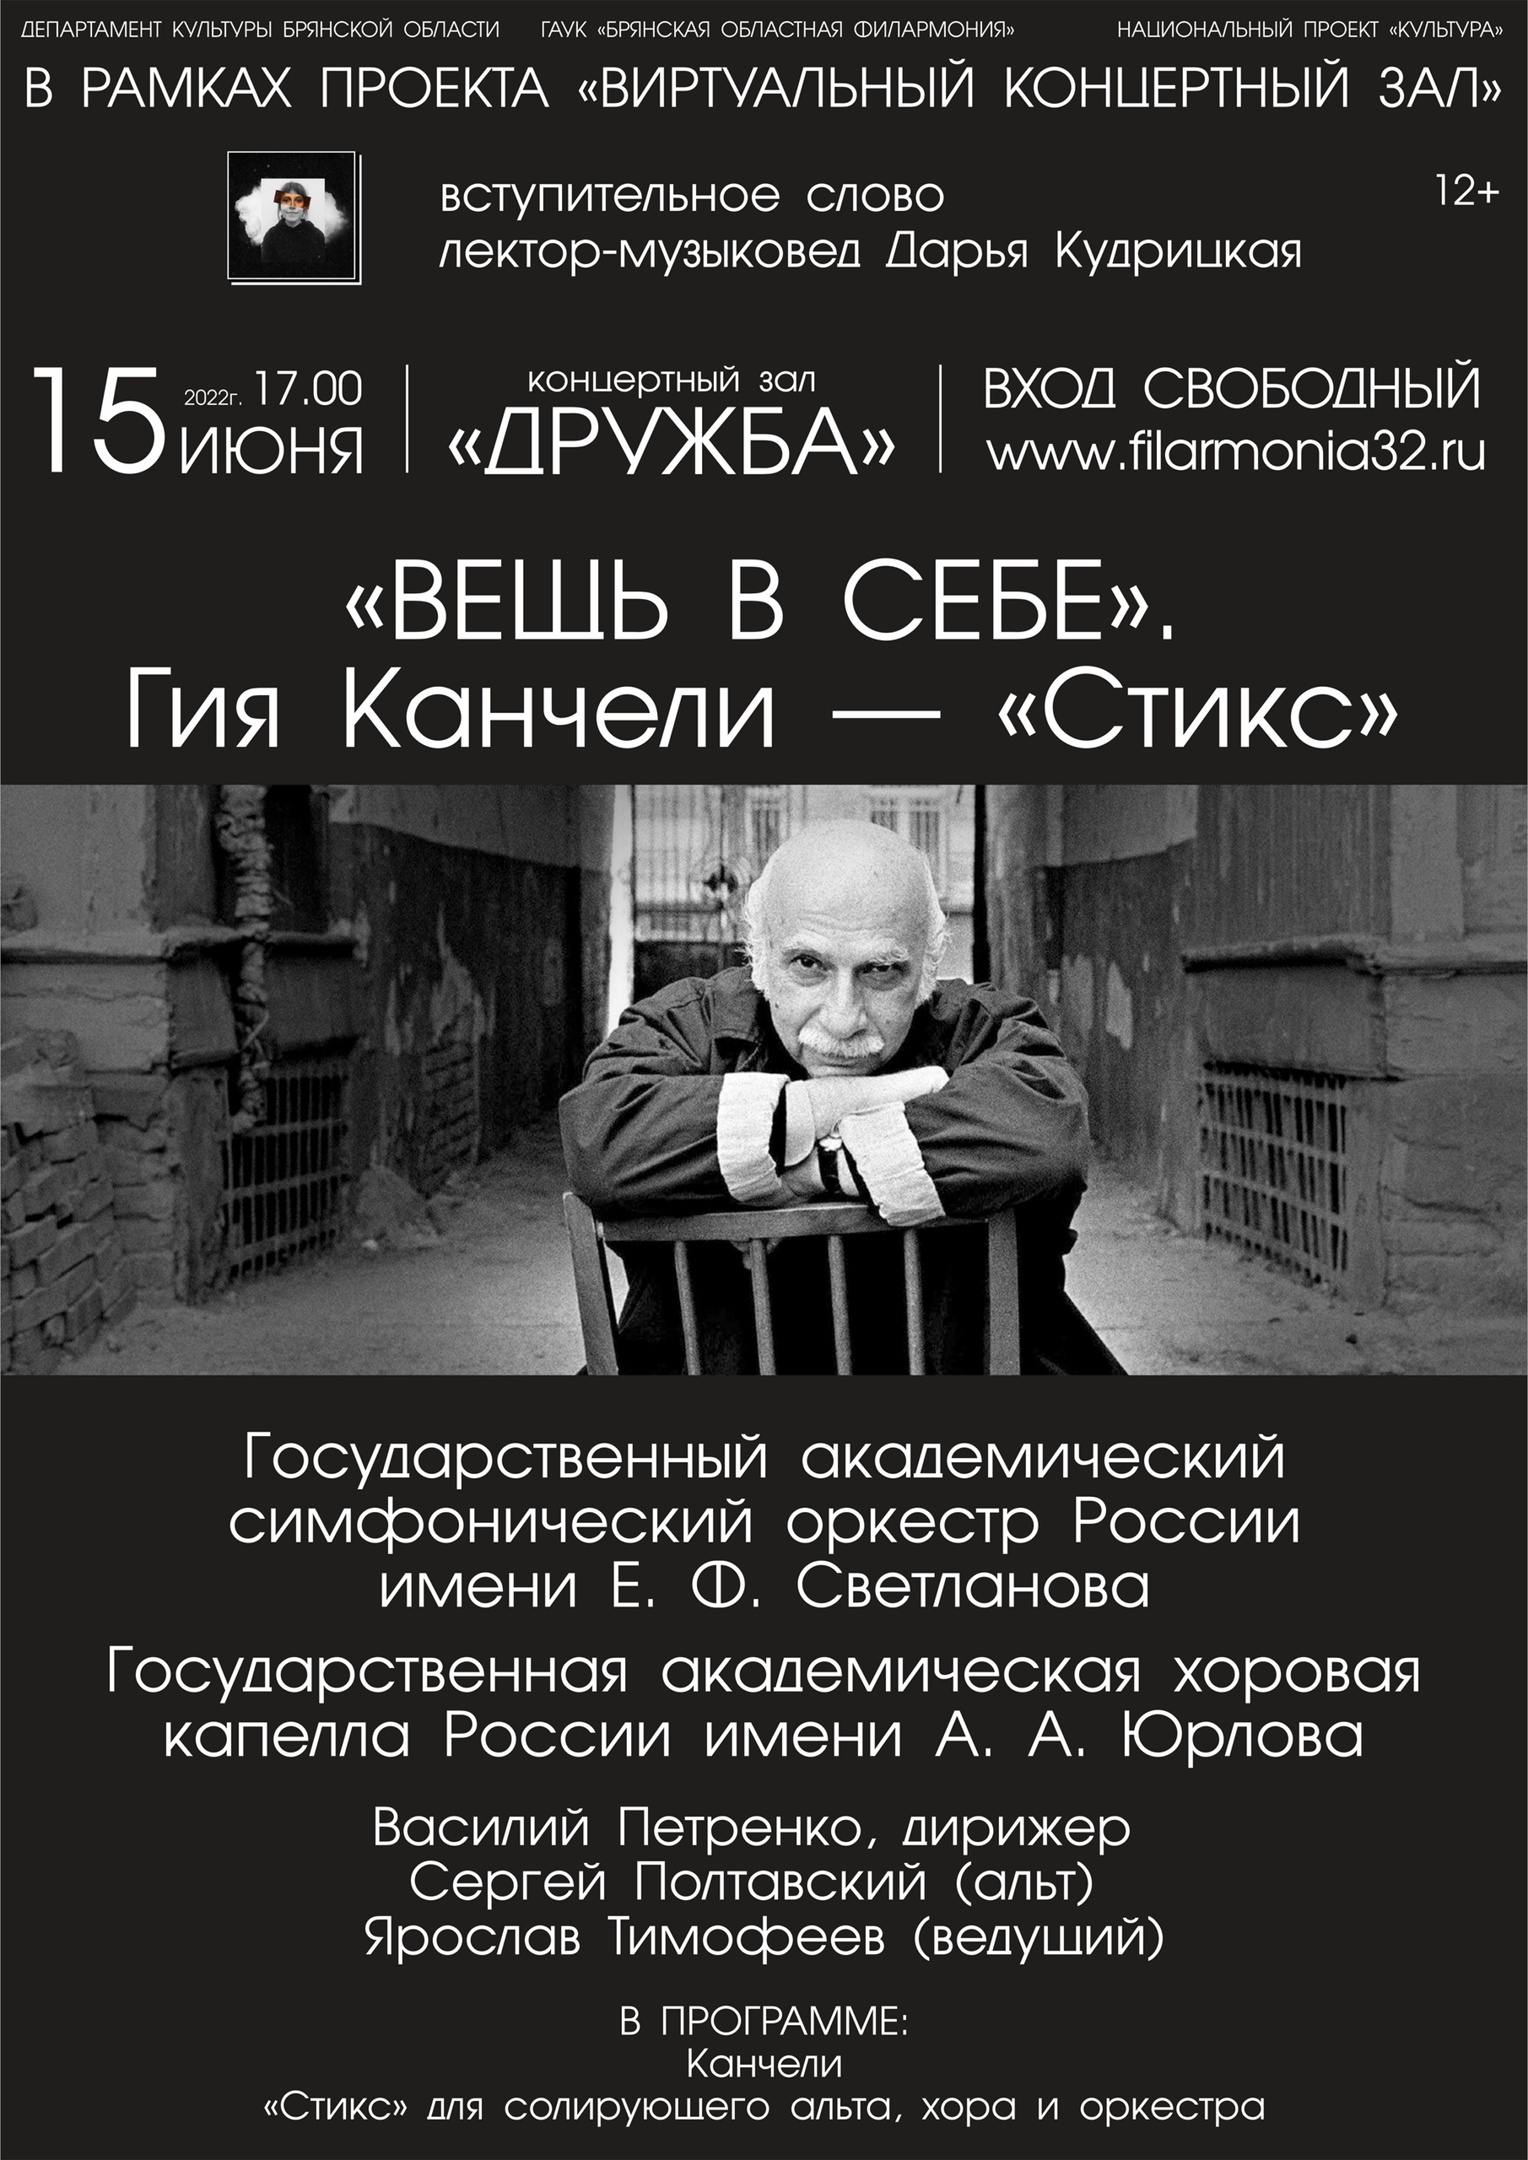 В Брянске cостоится показ программы из авторского цикла Ярослава Тимофеева «Вещь в себе»